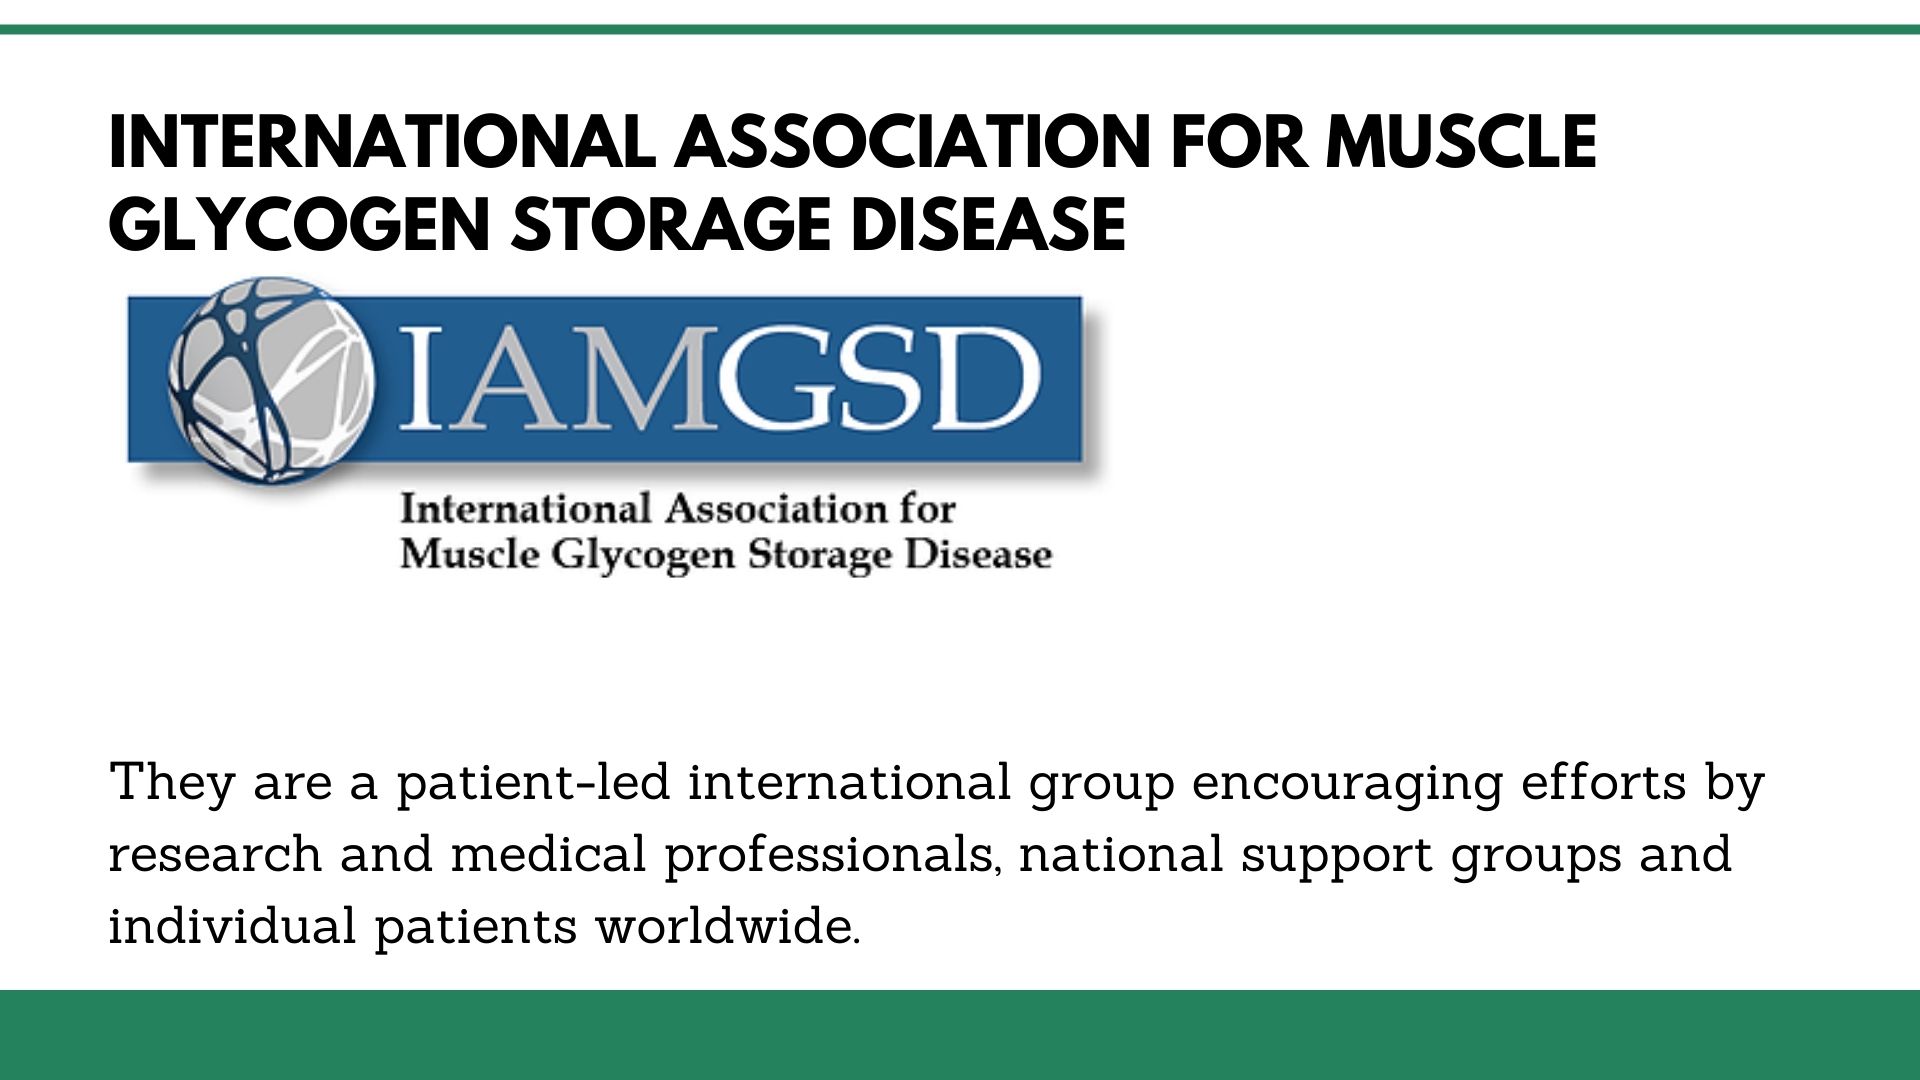 International Association for Muscle Glycogen Storage Disease